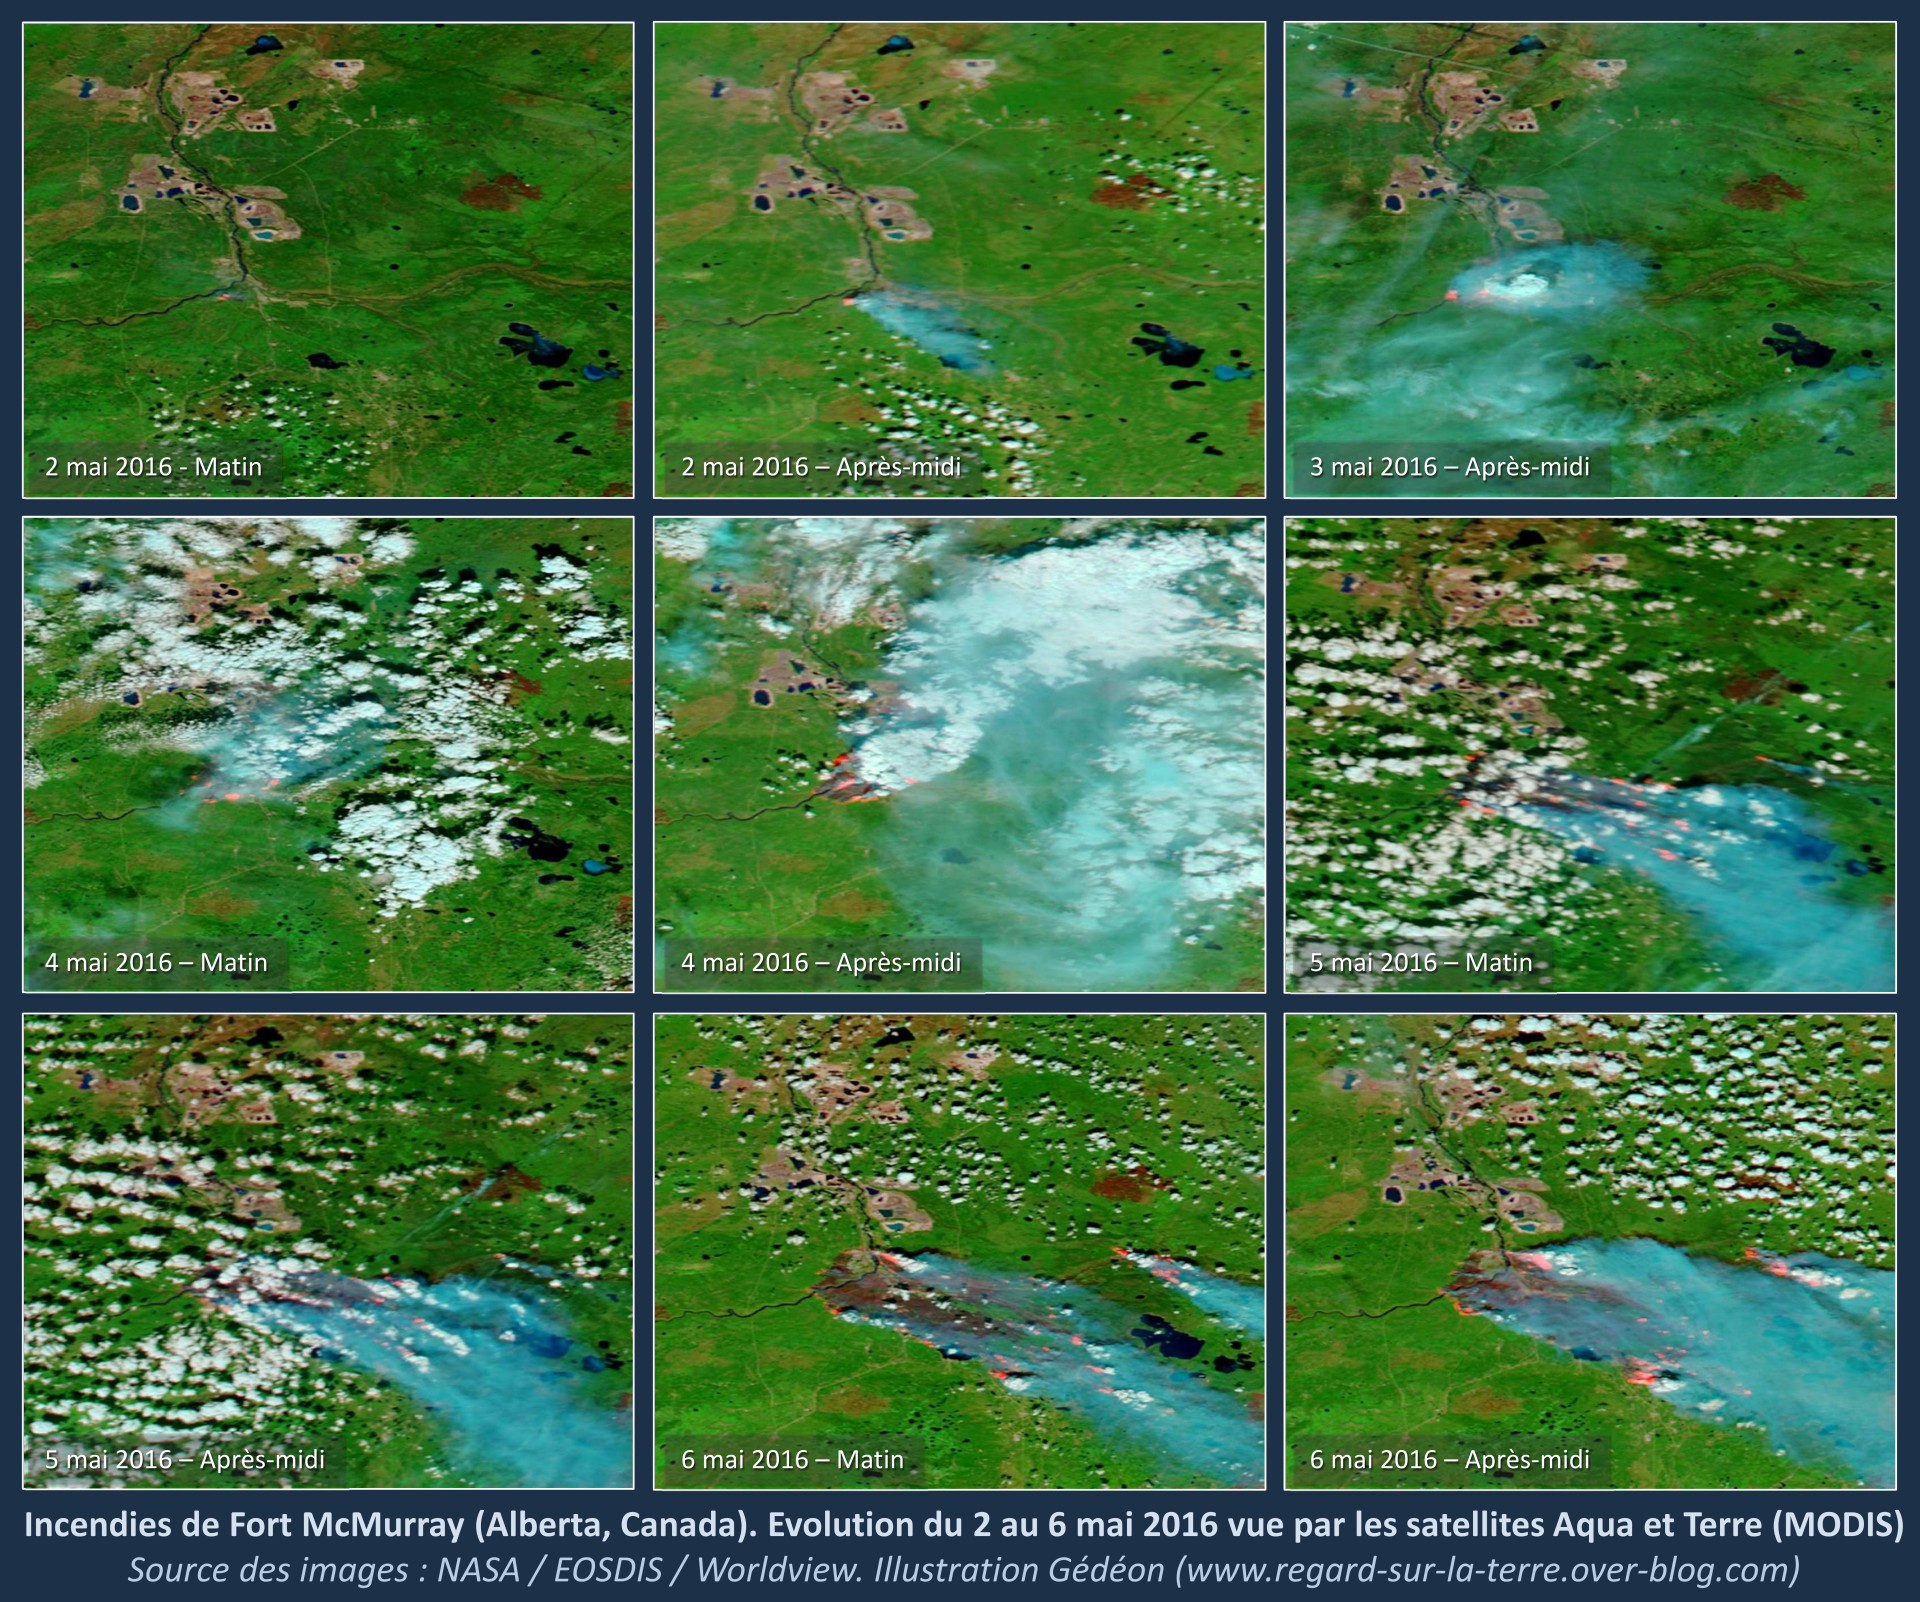 Fort Mc Murray - Alberta - Canada - Incendie - Wild fires - Instrument MODIS - Aqua et Terra - Série d'images aquises entre le 2 et le 6 mai